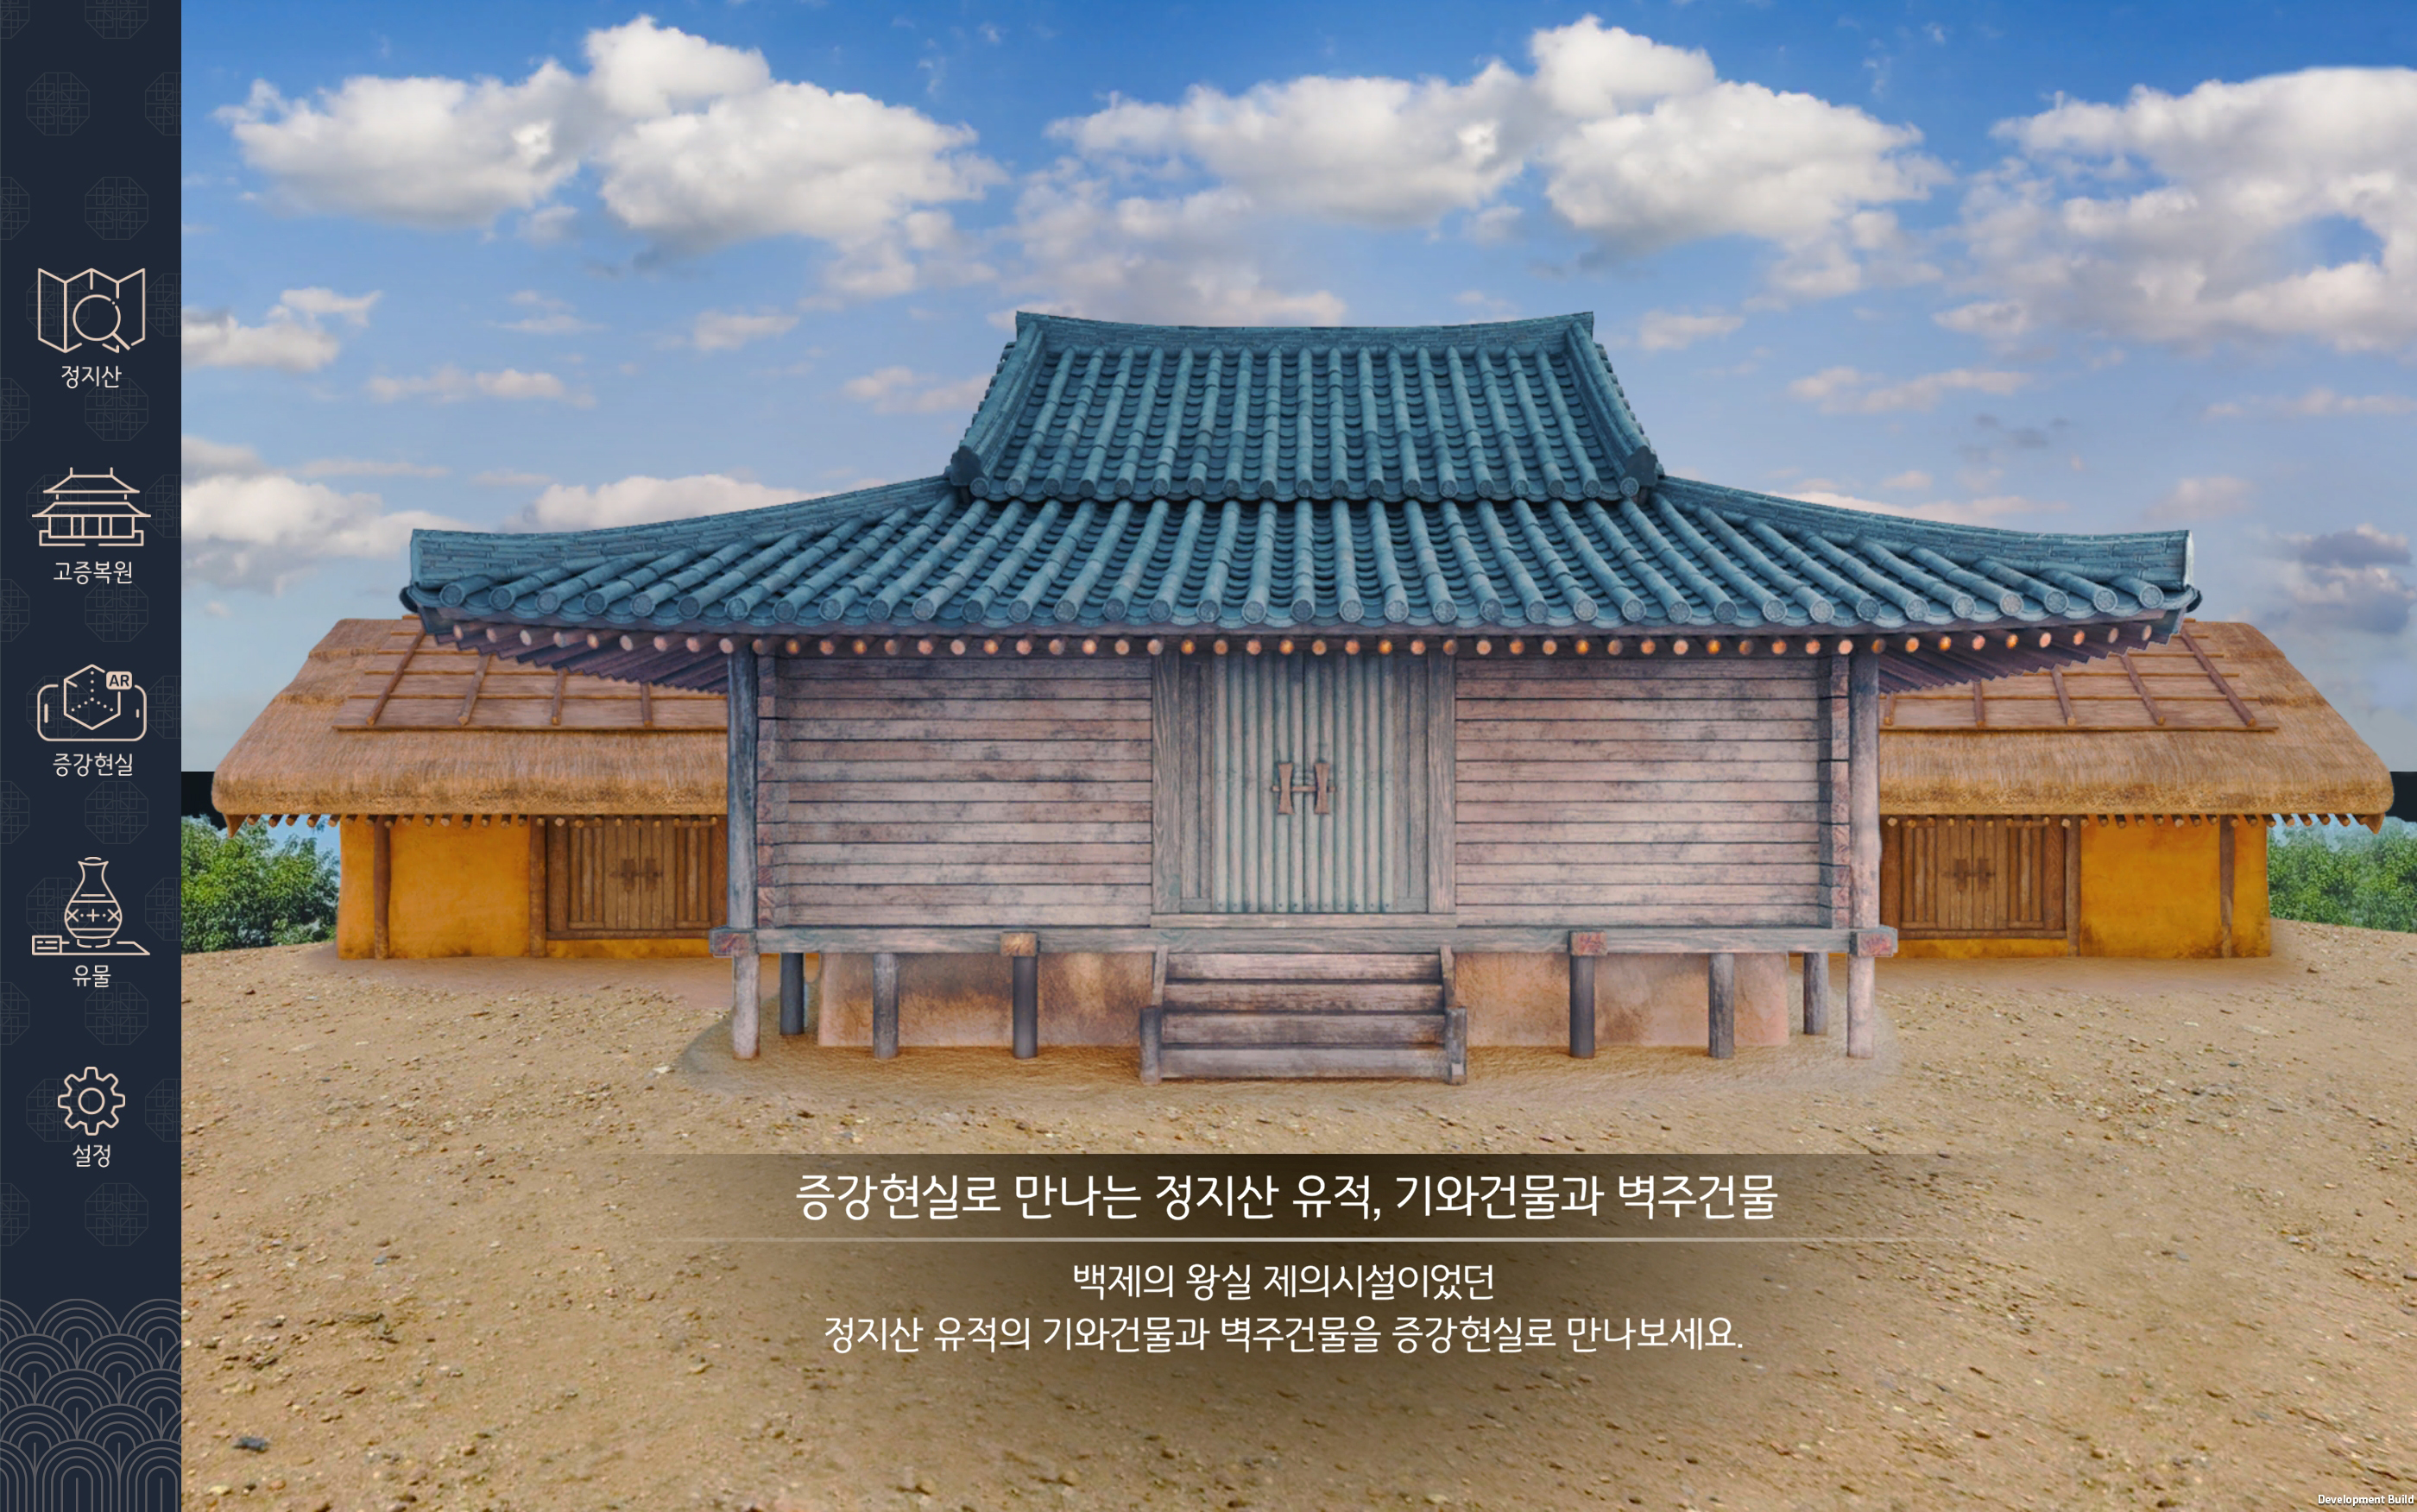 한국전통문화대학교가 3D로 복원한 정지산 유적지 건축물.   문화재청 제공  